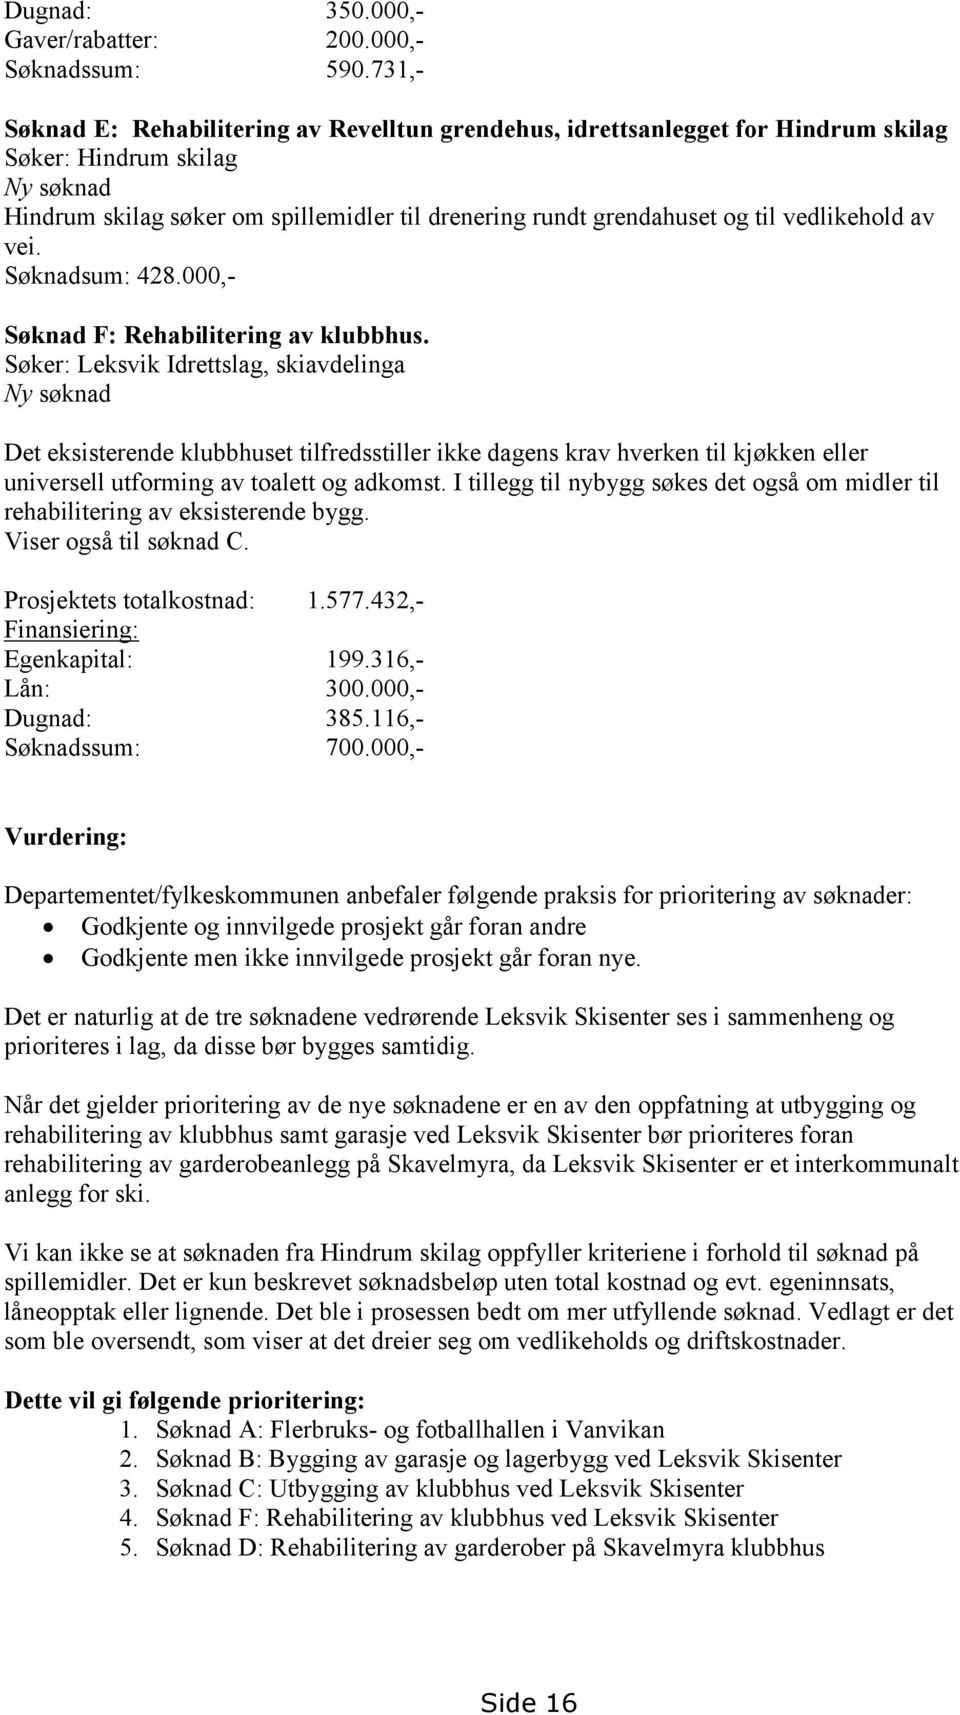 vedlikehold av vei. Søknadsum: 428.000,- Søknad F: Rehabilitering av klubbhus.